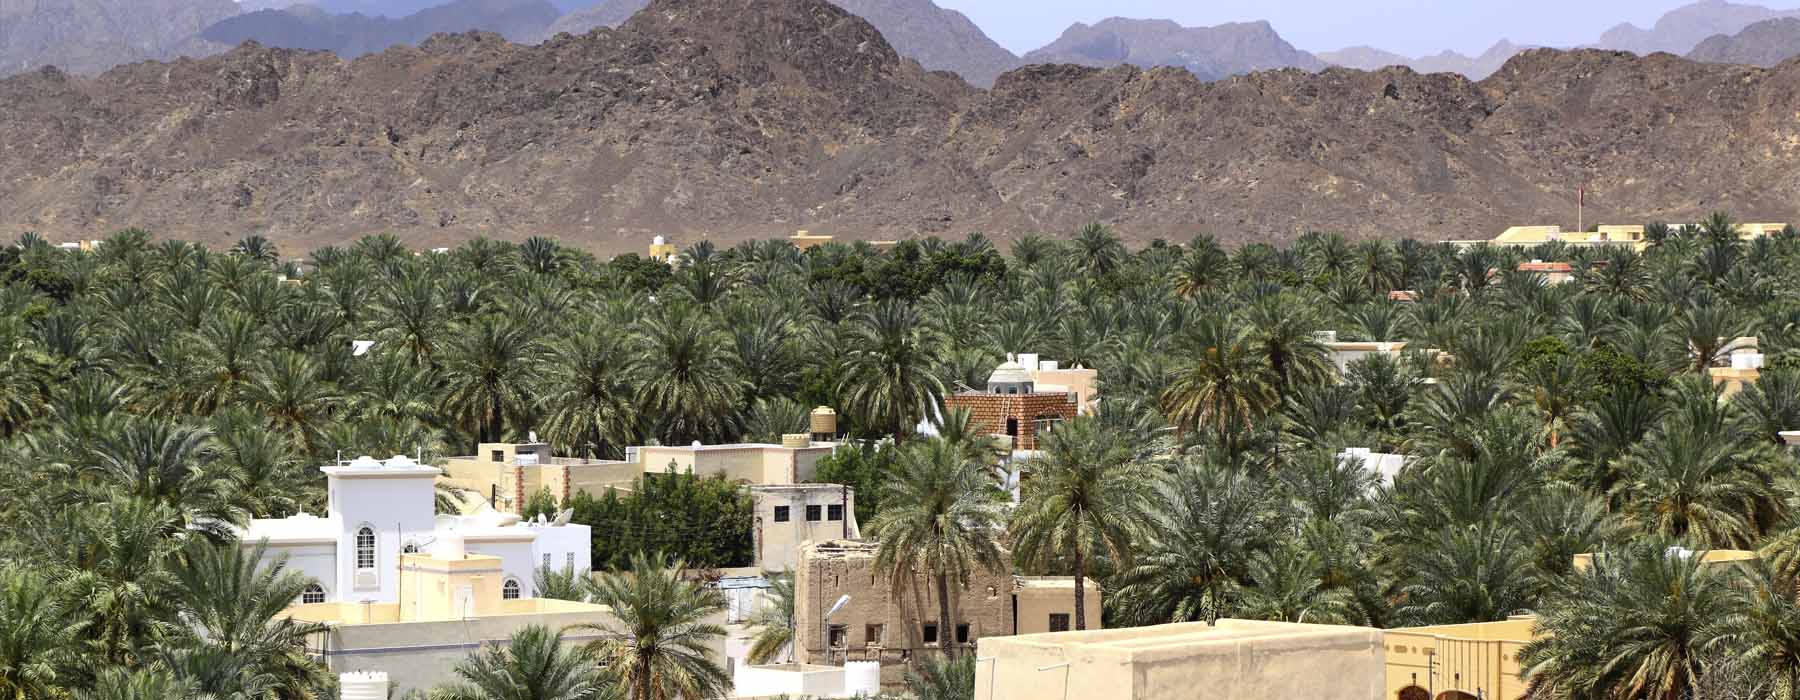 Oman<br class="hidden-md hidden-lg" /> Road Trips